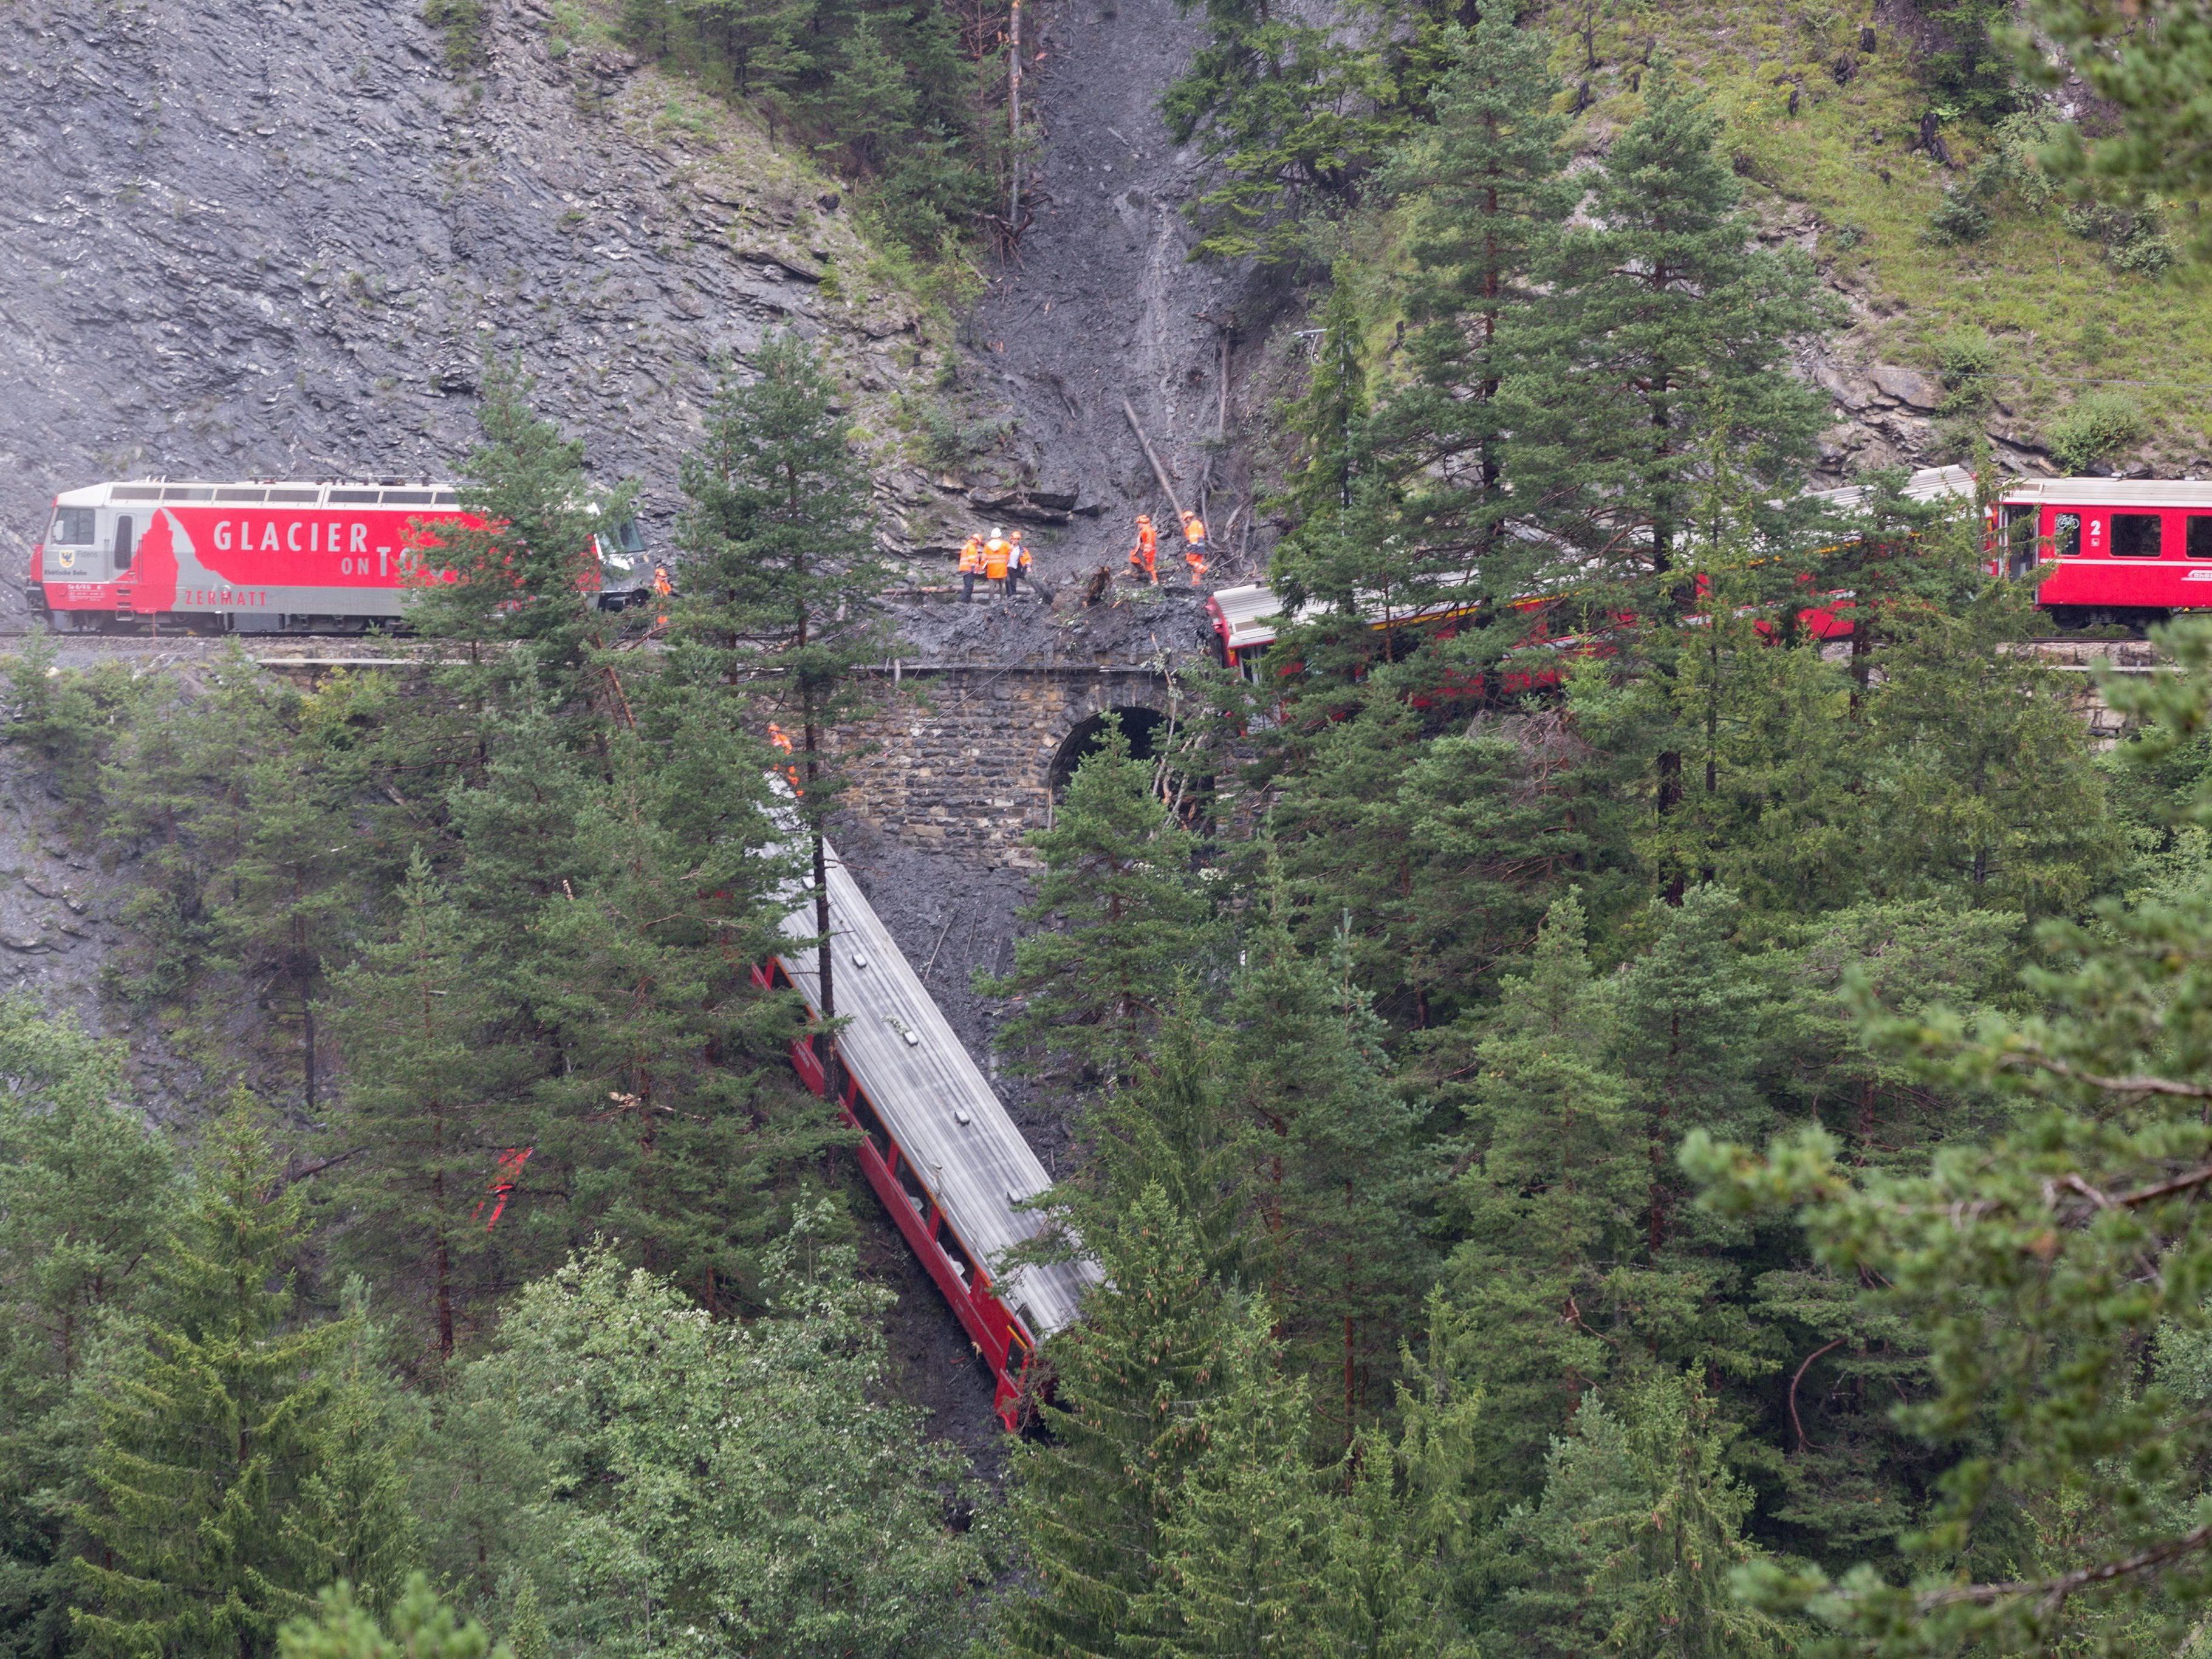 Zug in Graubünden bei Tiefencastel entgleist - Großaufgebot an Rettungskräften im Einsatz.